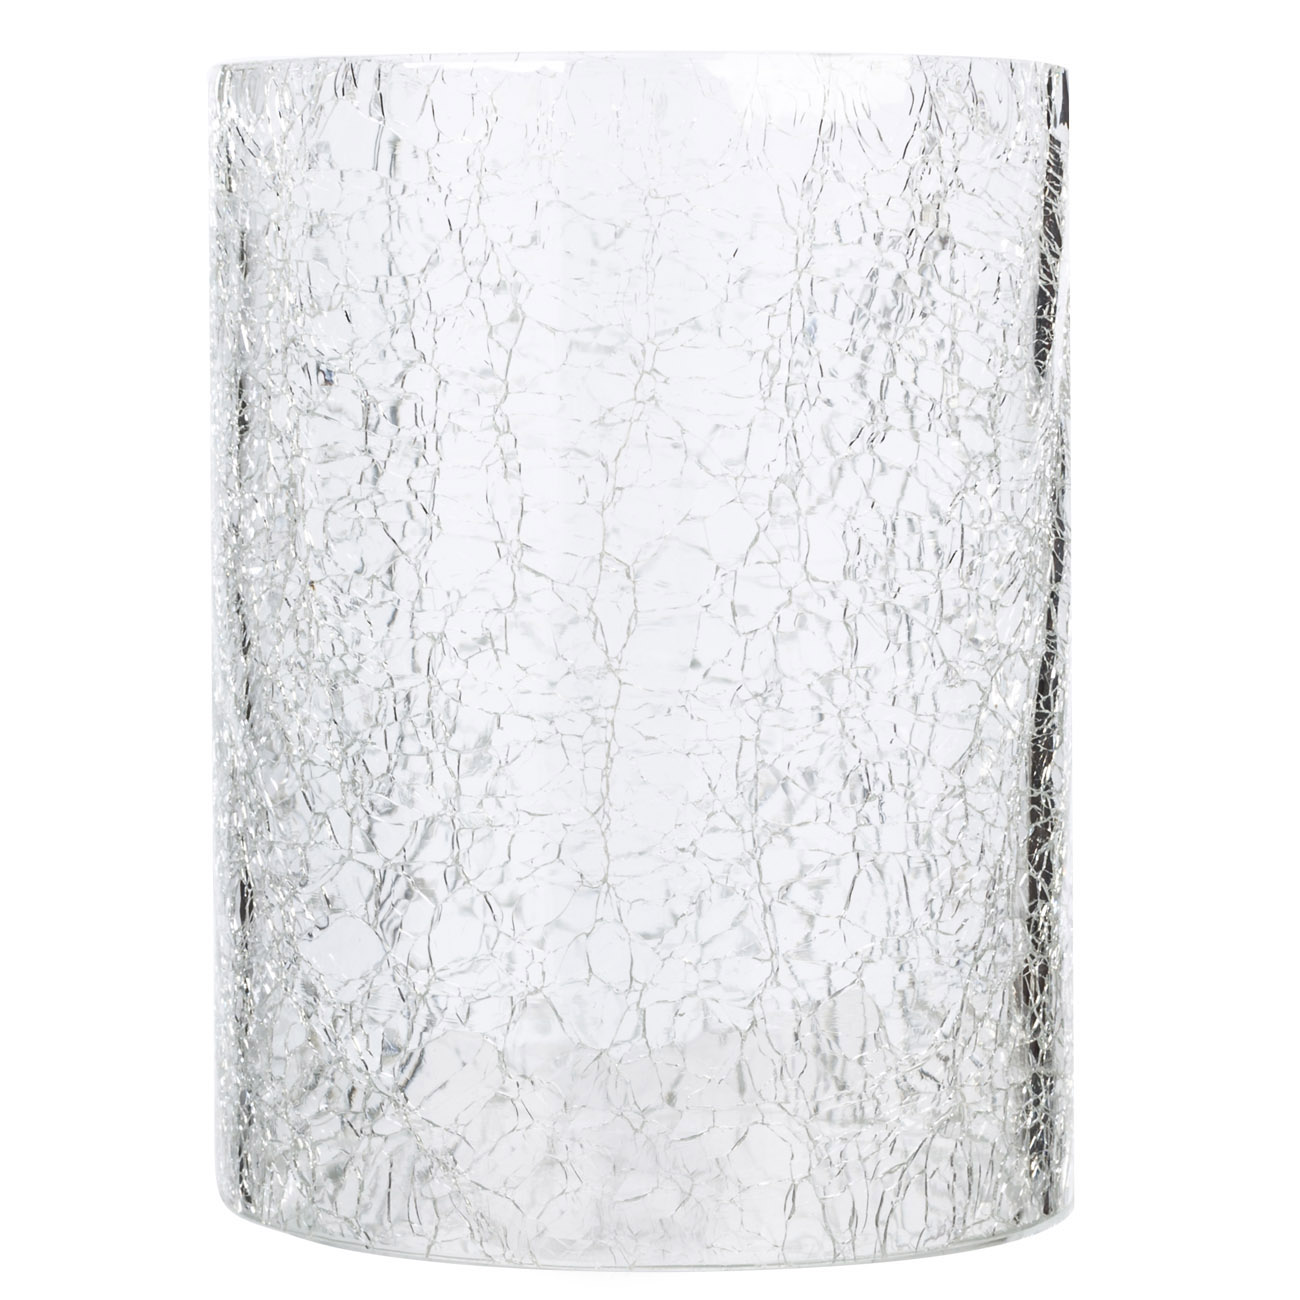 Подсвечник, 26 см, для одной свечи, на ножке, стекло/металл, серебристый, Кракелюр, Fantastic Ice изображение № 2